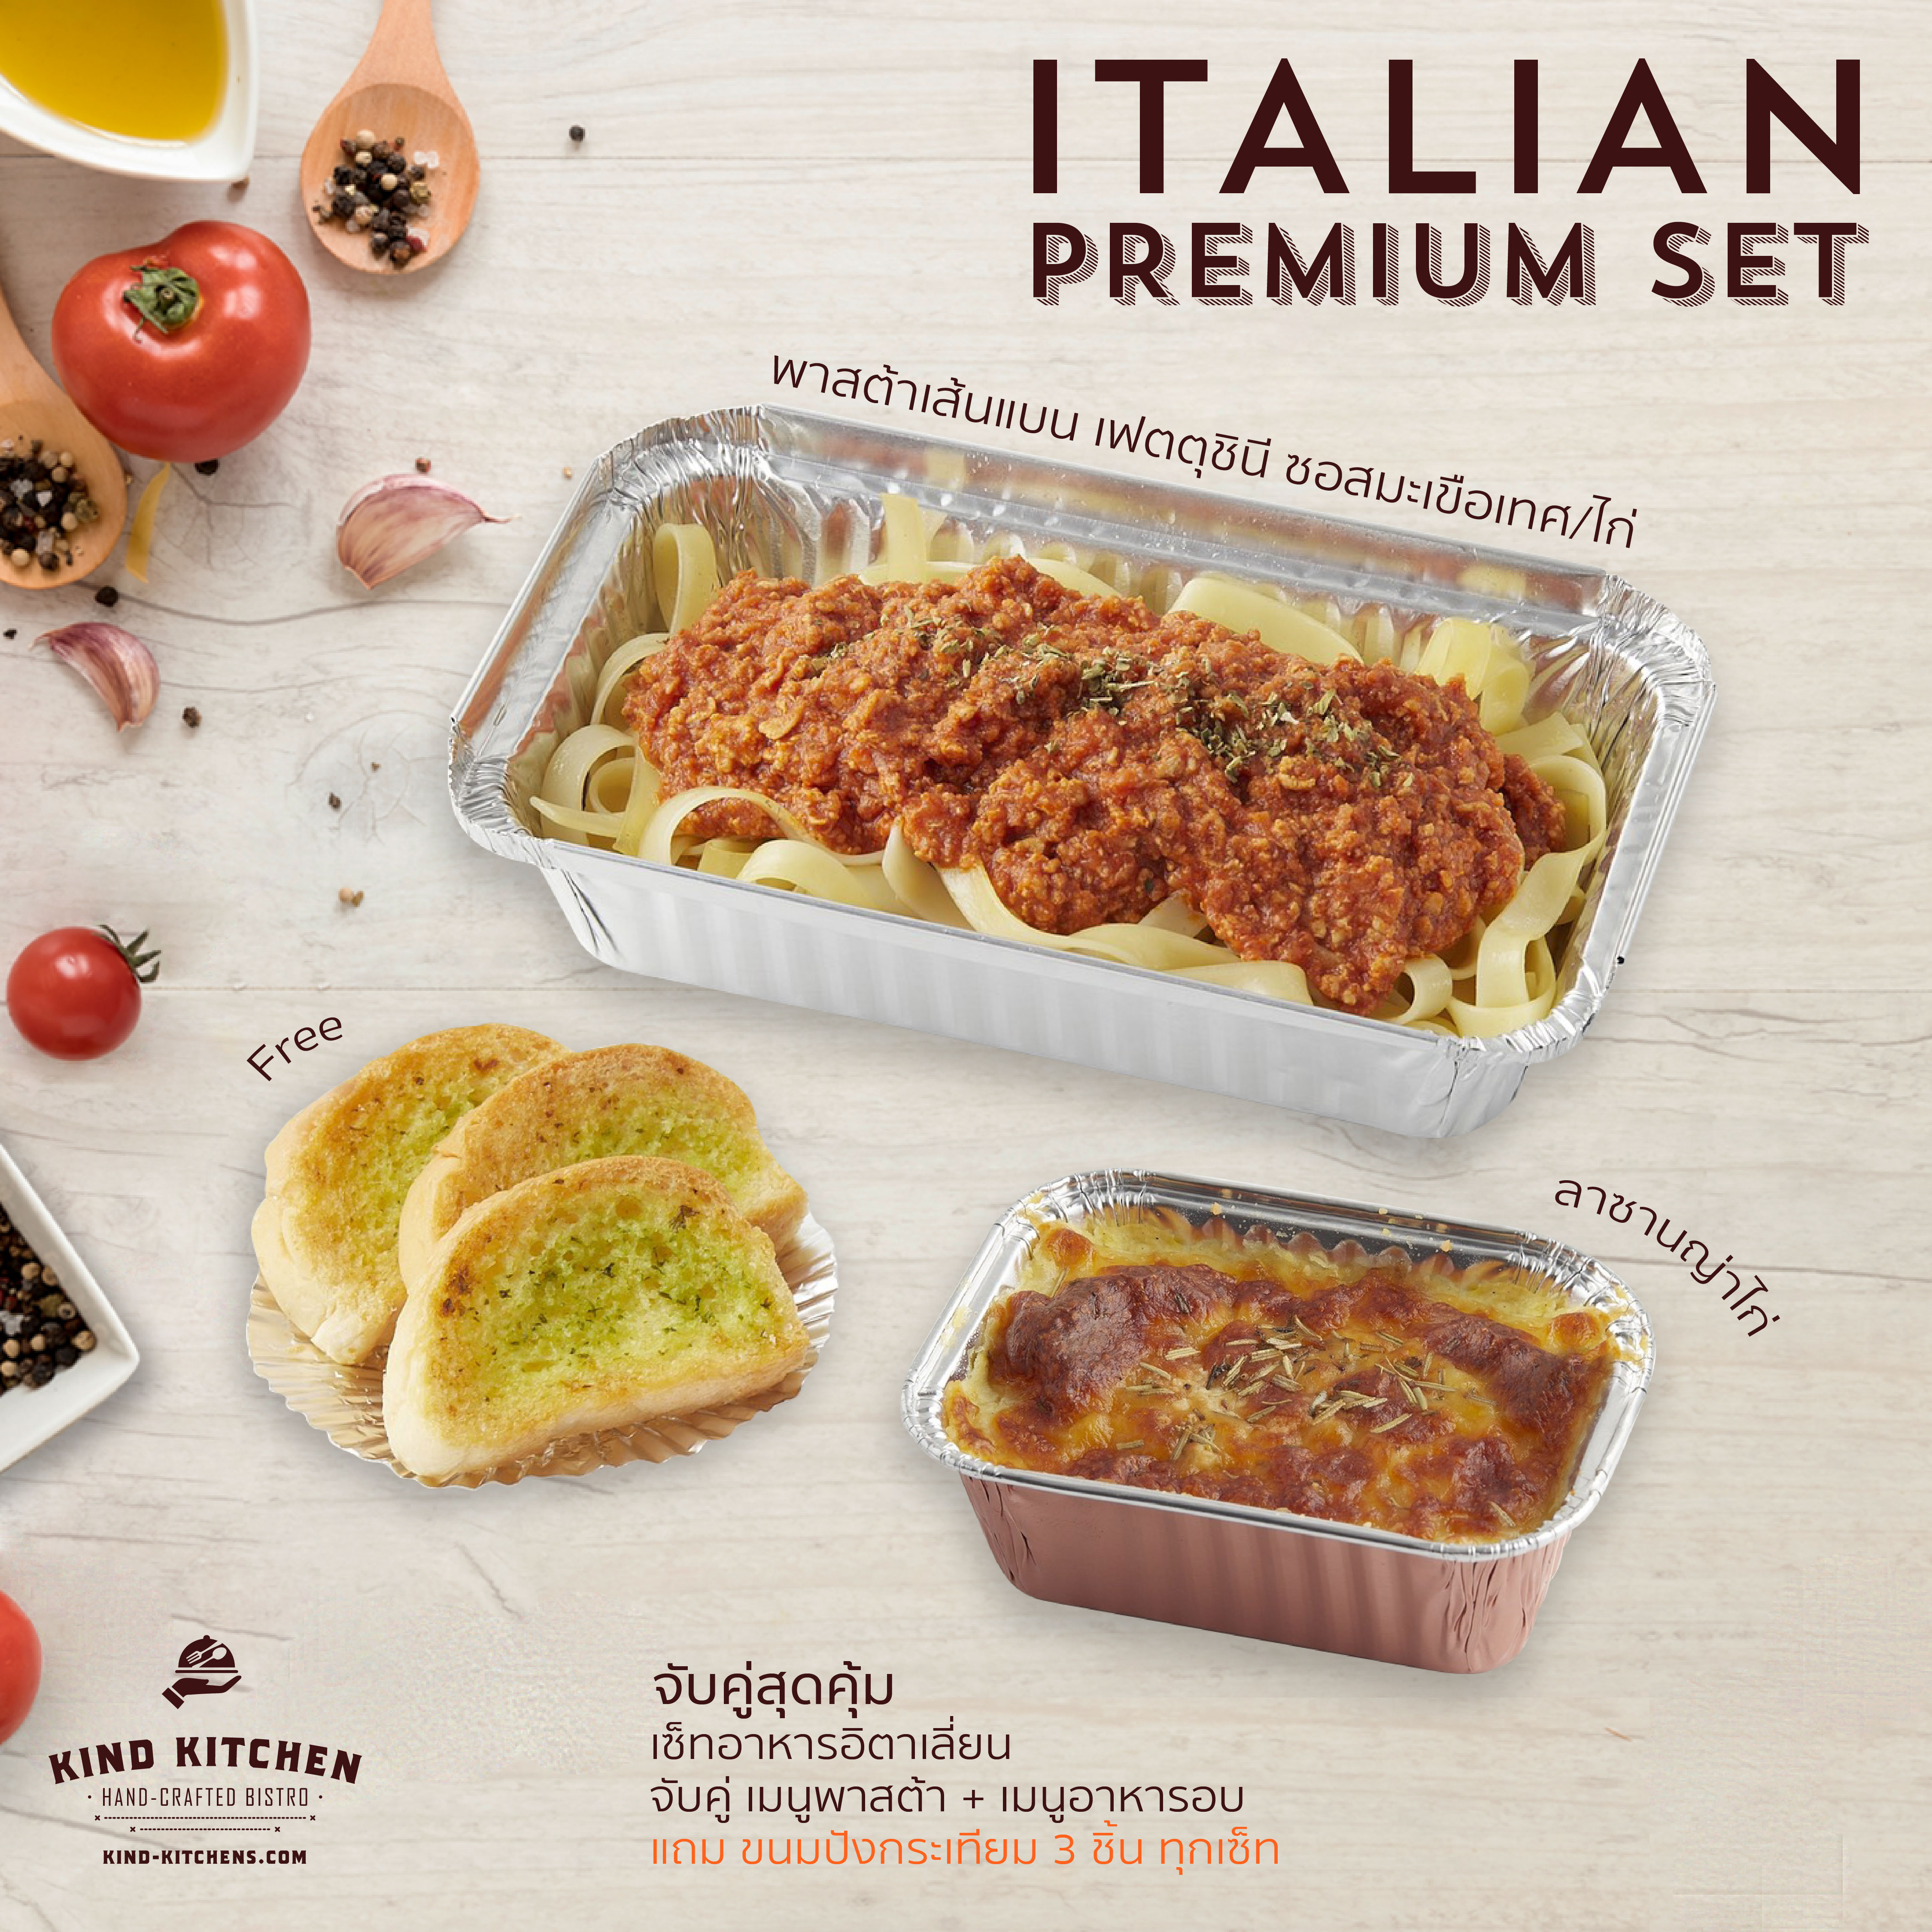 เซ็ทอาหารอิตาเลี่ยน Italian Premium Set_พาสต้าเส้นแบน เฟตตุชินี ซอสมะเขือเทศ/ไก่ + ลาซานญ่าไก่